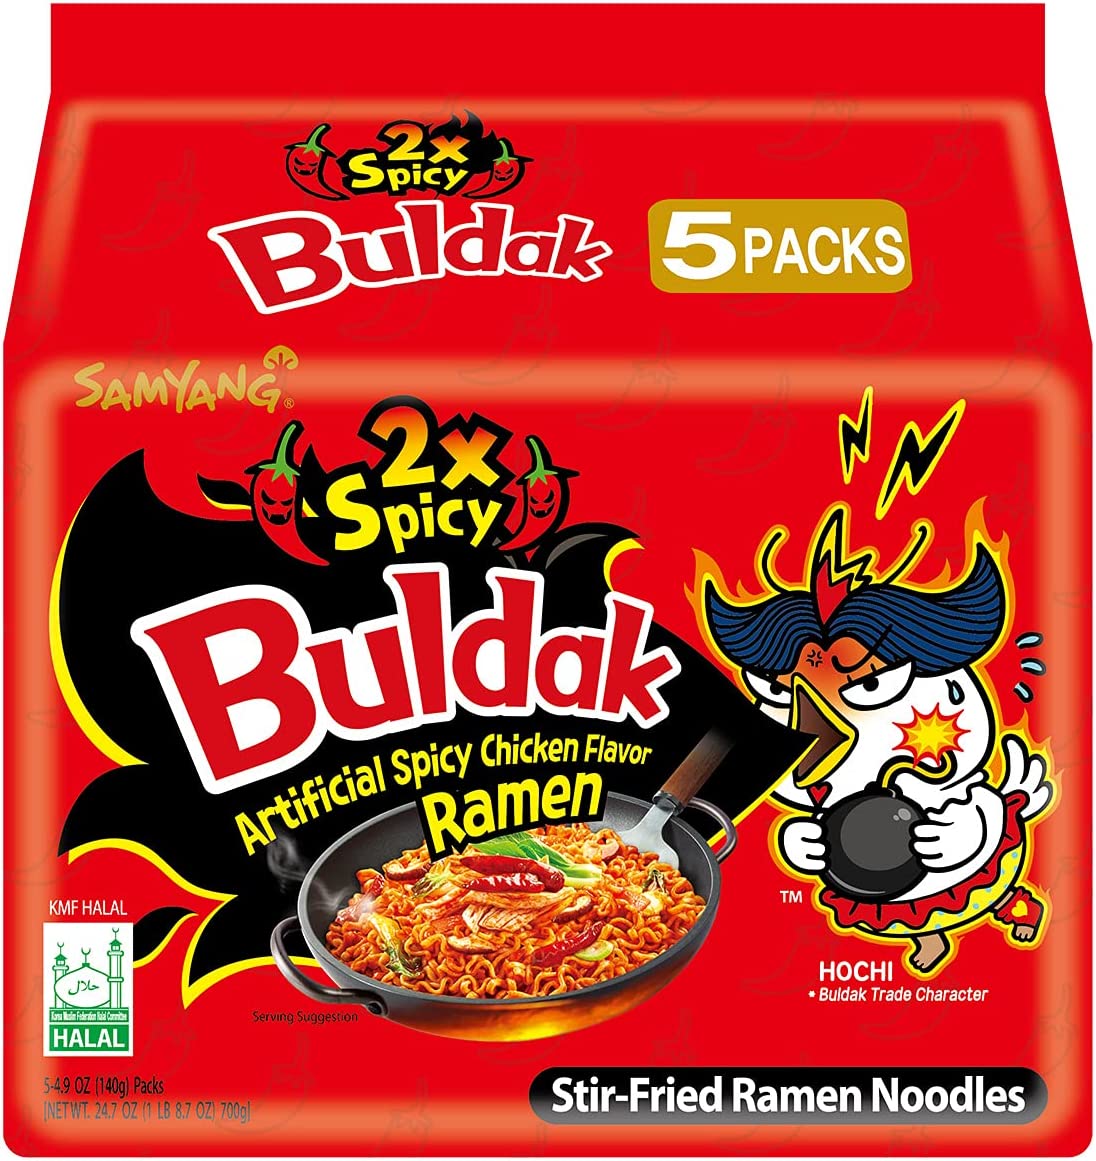 Samyang Buldak Hot Chicken Flavour Ramen Noodles - 2 X Spicy! Pack of 5 -  Hot-Headz! Hot sauce fanatics!